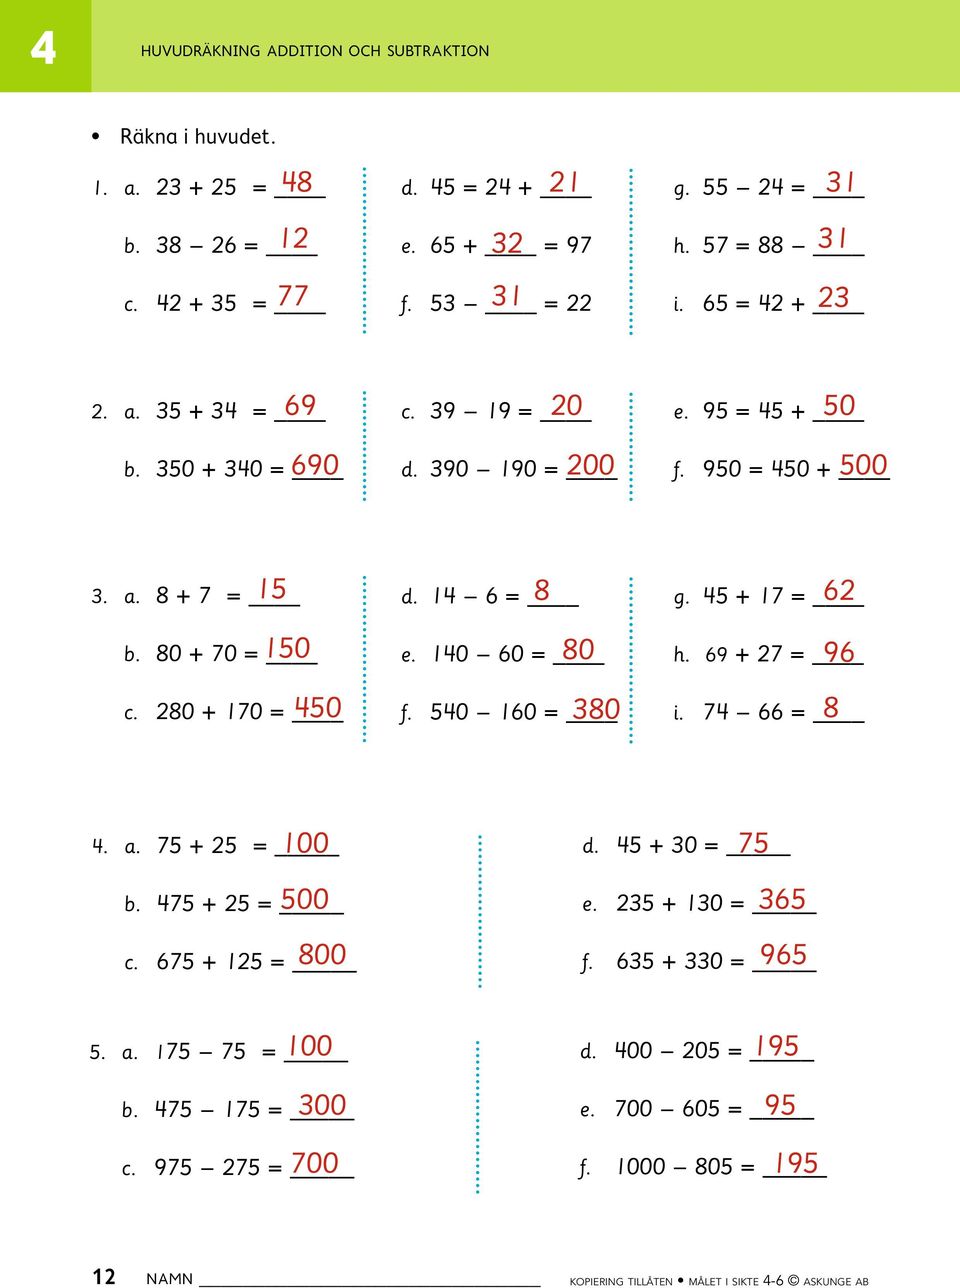 280 + 170 = 15 8 62 d. 1 6 = 150 80 50 e. 10 60 = 380 f. 50 160 = g. 5 + 17 = 96 h. 69 + 27 = 8 i. 7 66 =. a. 75 + 25 = b. 75 + 25 = c. 675 + 125 = 100 75 d.